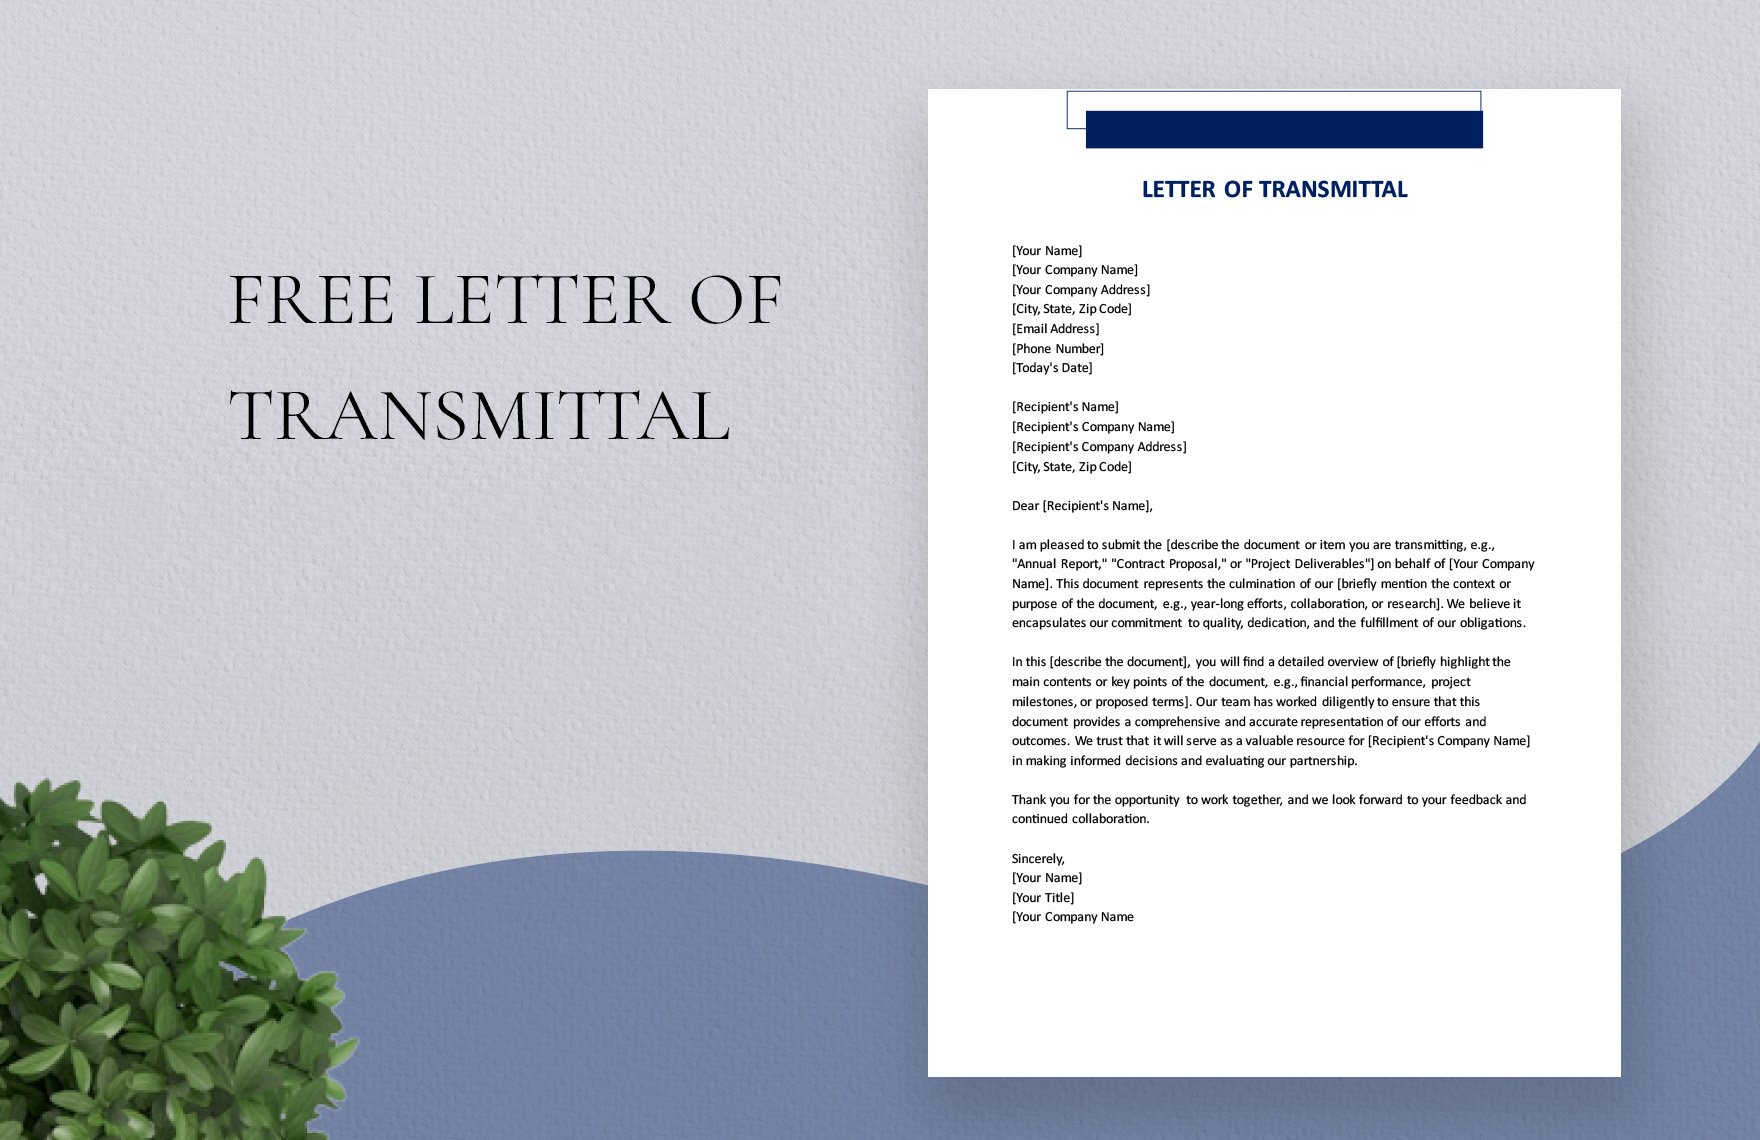 Letter Of Transmittal